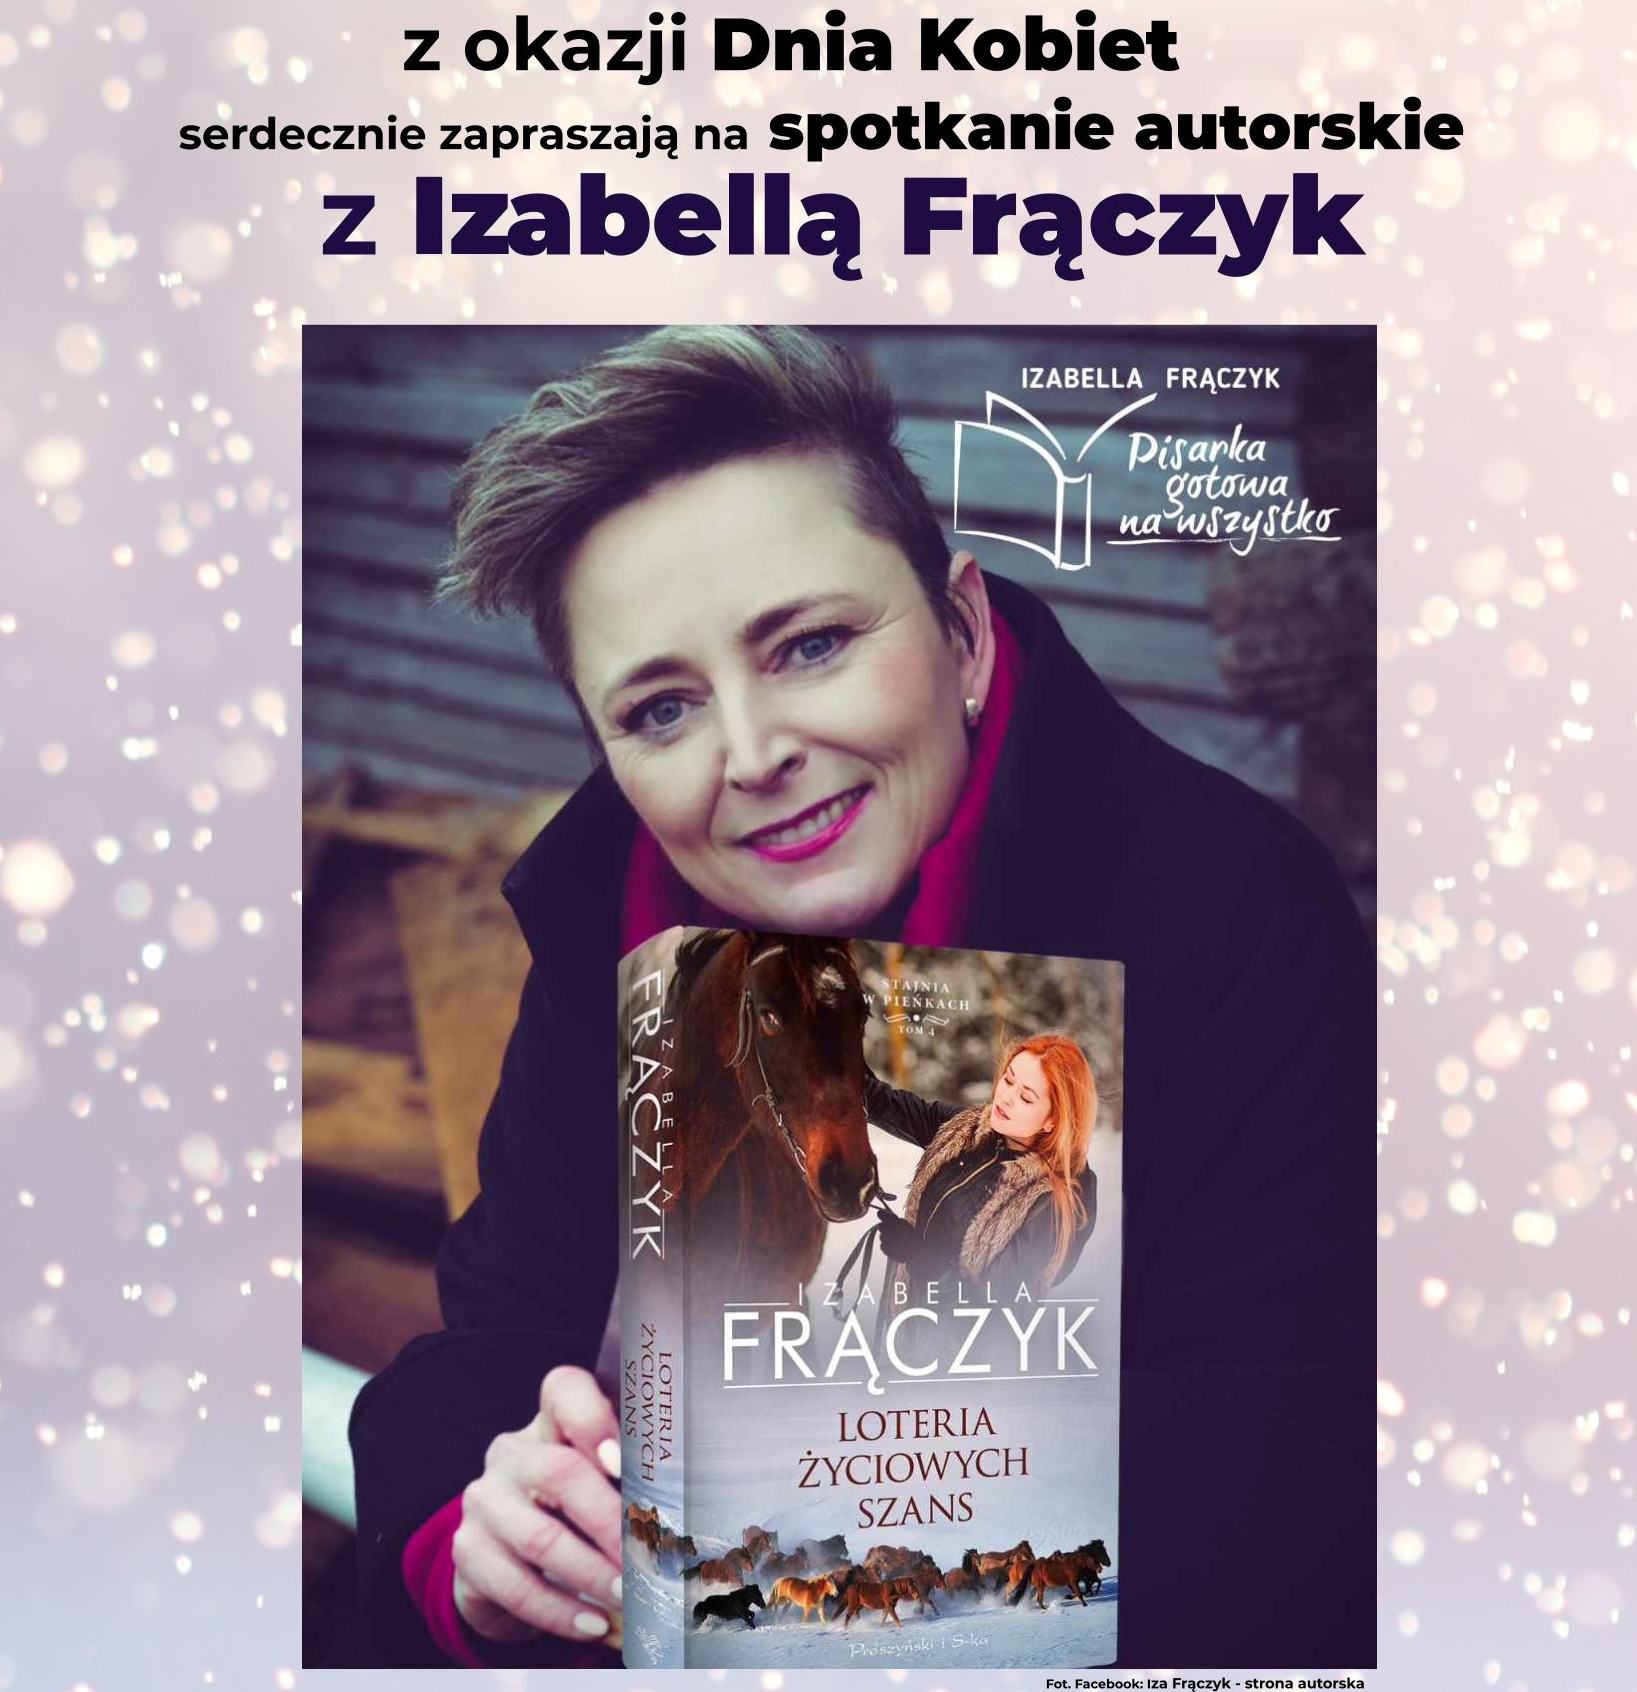 You are currently viewing Spotkanie autorskie z Izabellą Frączyk